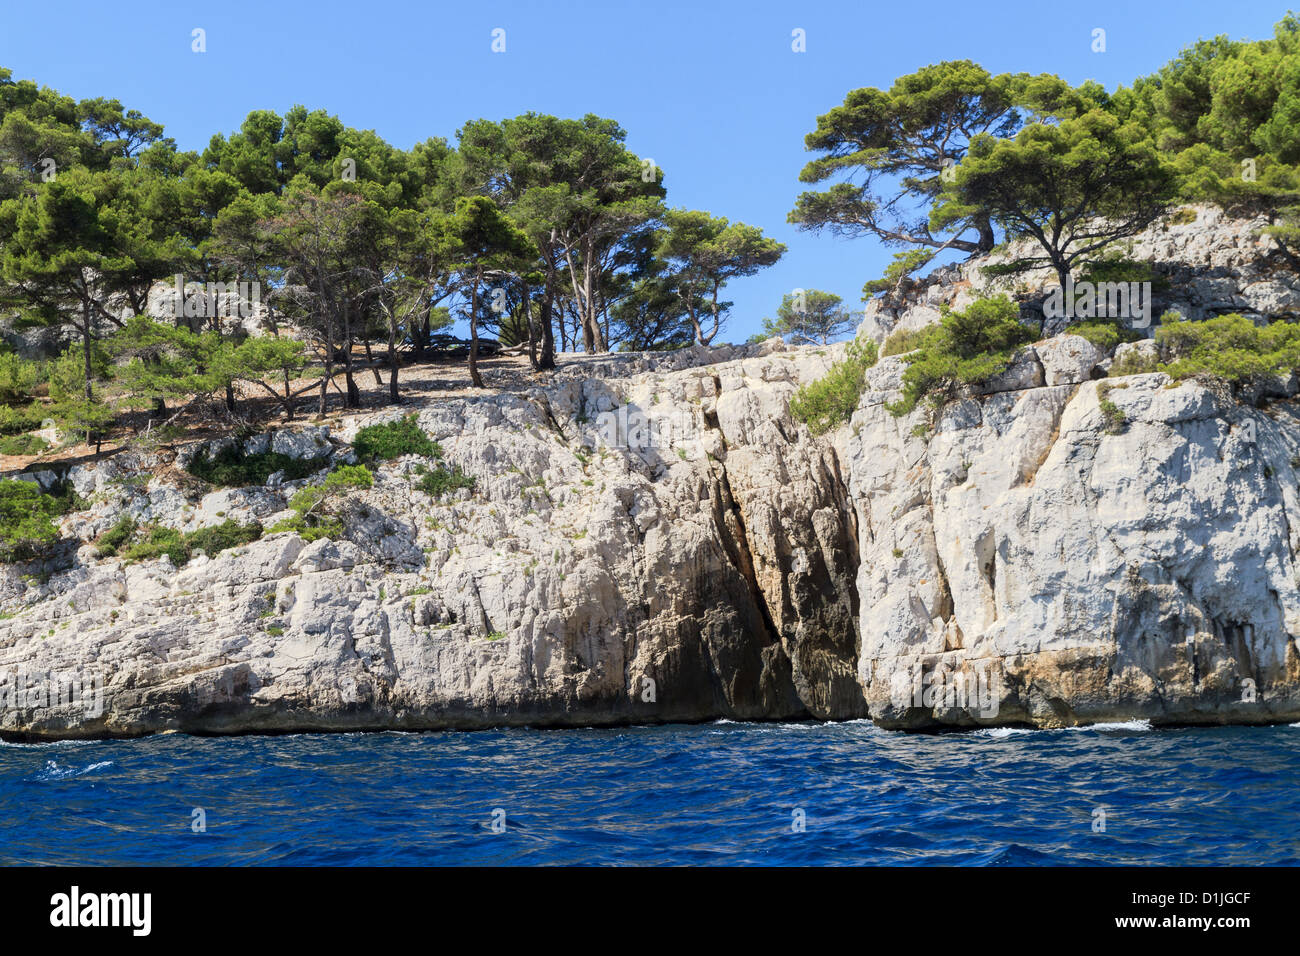 La côte des Calanques près de Cassis en Provence, dans le sud de la France Banque D'Images